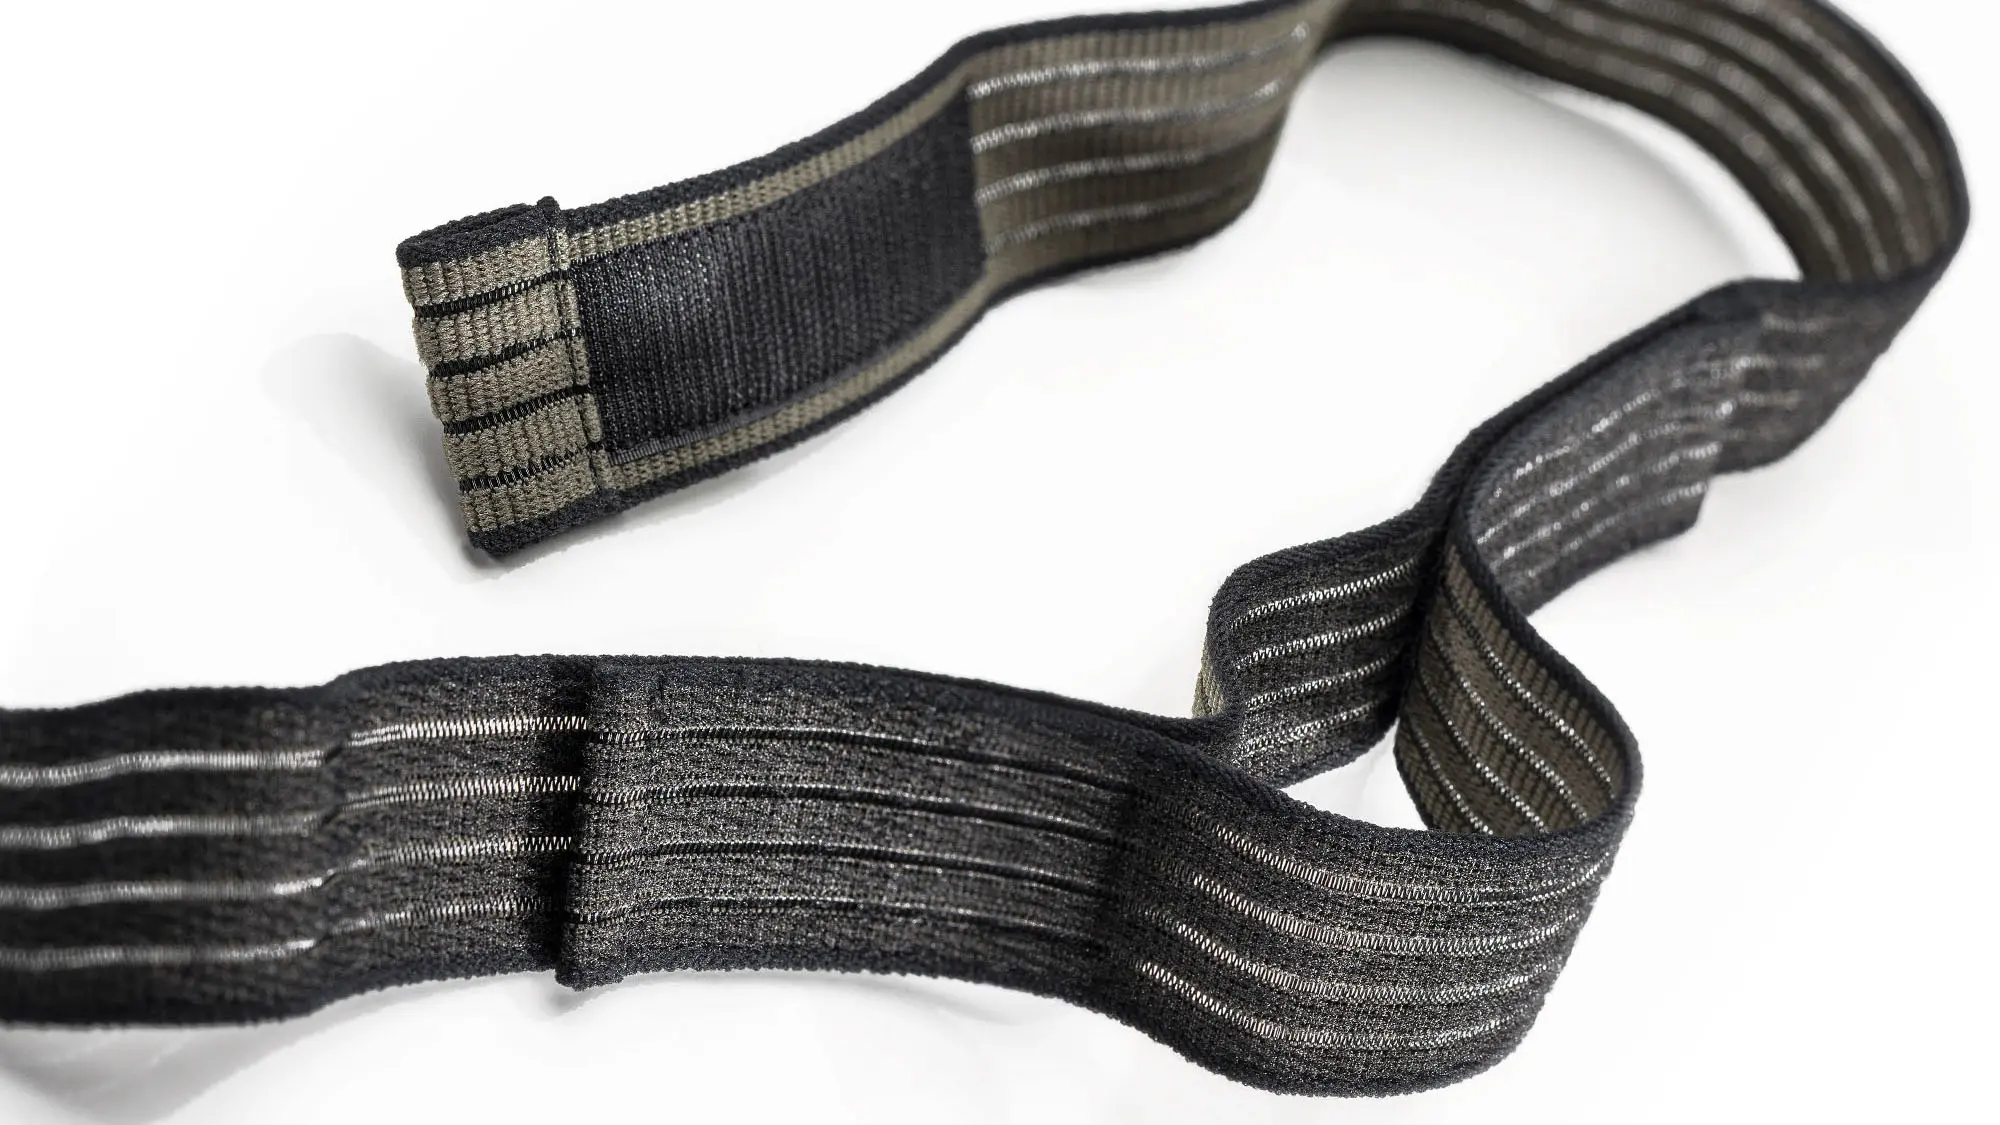 Produktfoto eines schwarz- und olivfarbenen und elastischen Klettband auf weißem Hintergrund